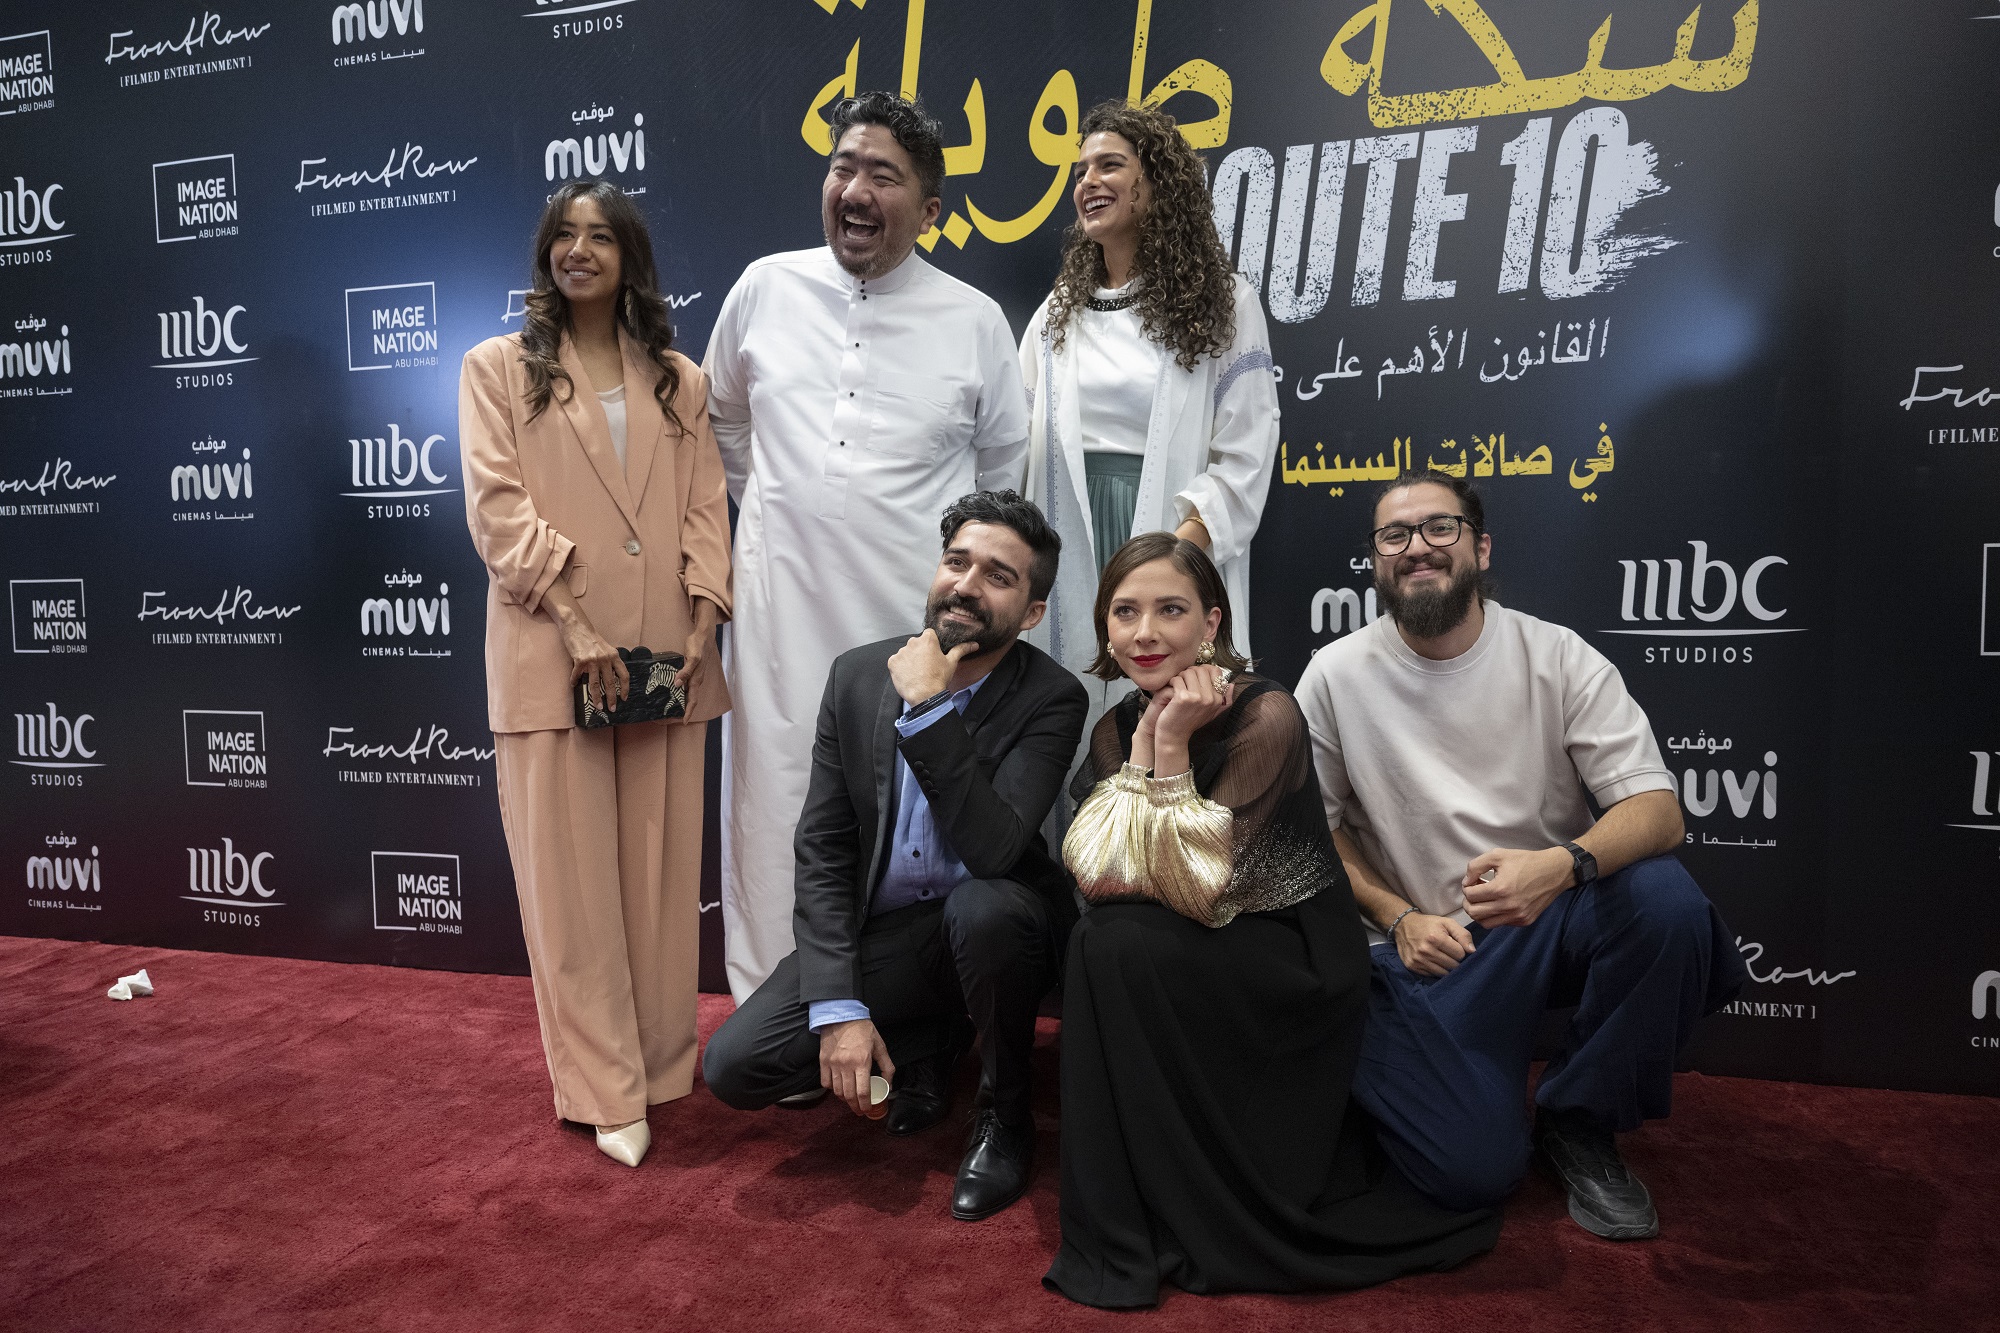 إطلاق الفيلم السعودي "سكة طويلة" في الرياض مع عرض أول حصري بحضور نجوم الفيلم وصنّاعه